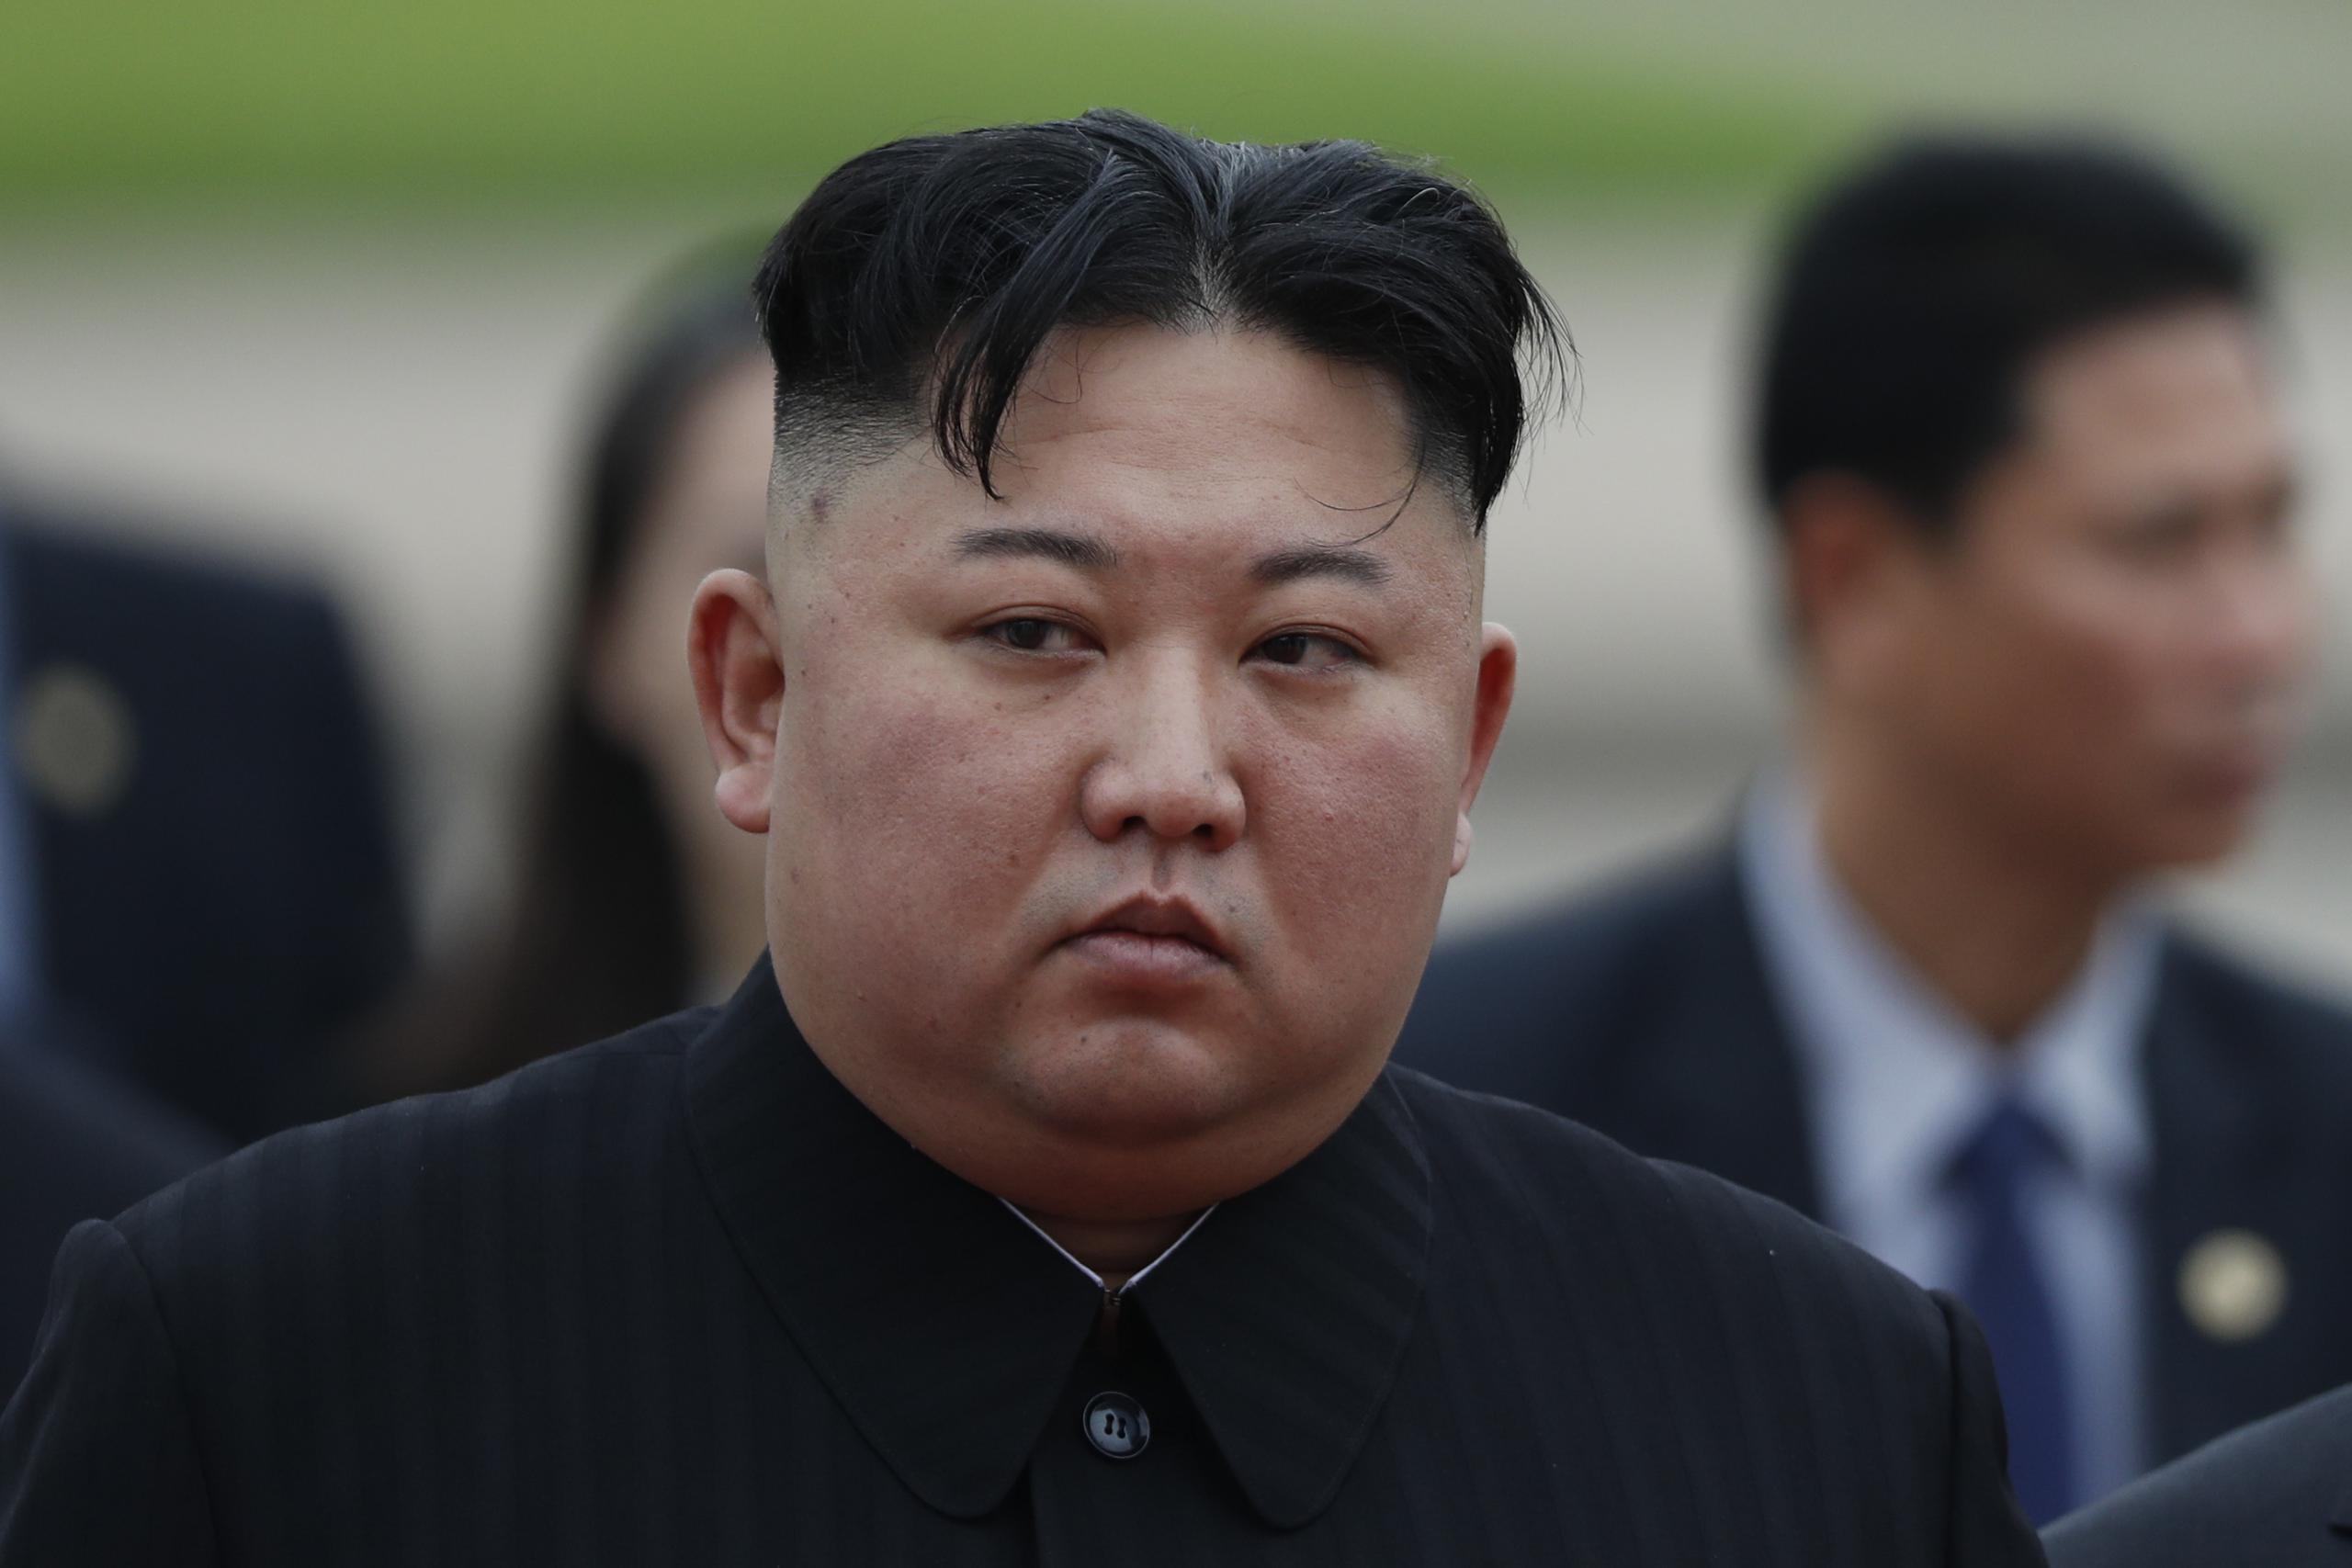 Fue la primera aparición pública del presidente norcoreano en mas de un mes.